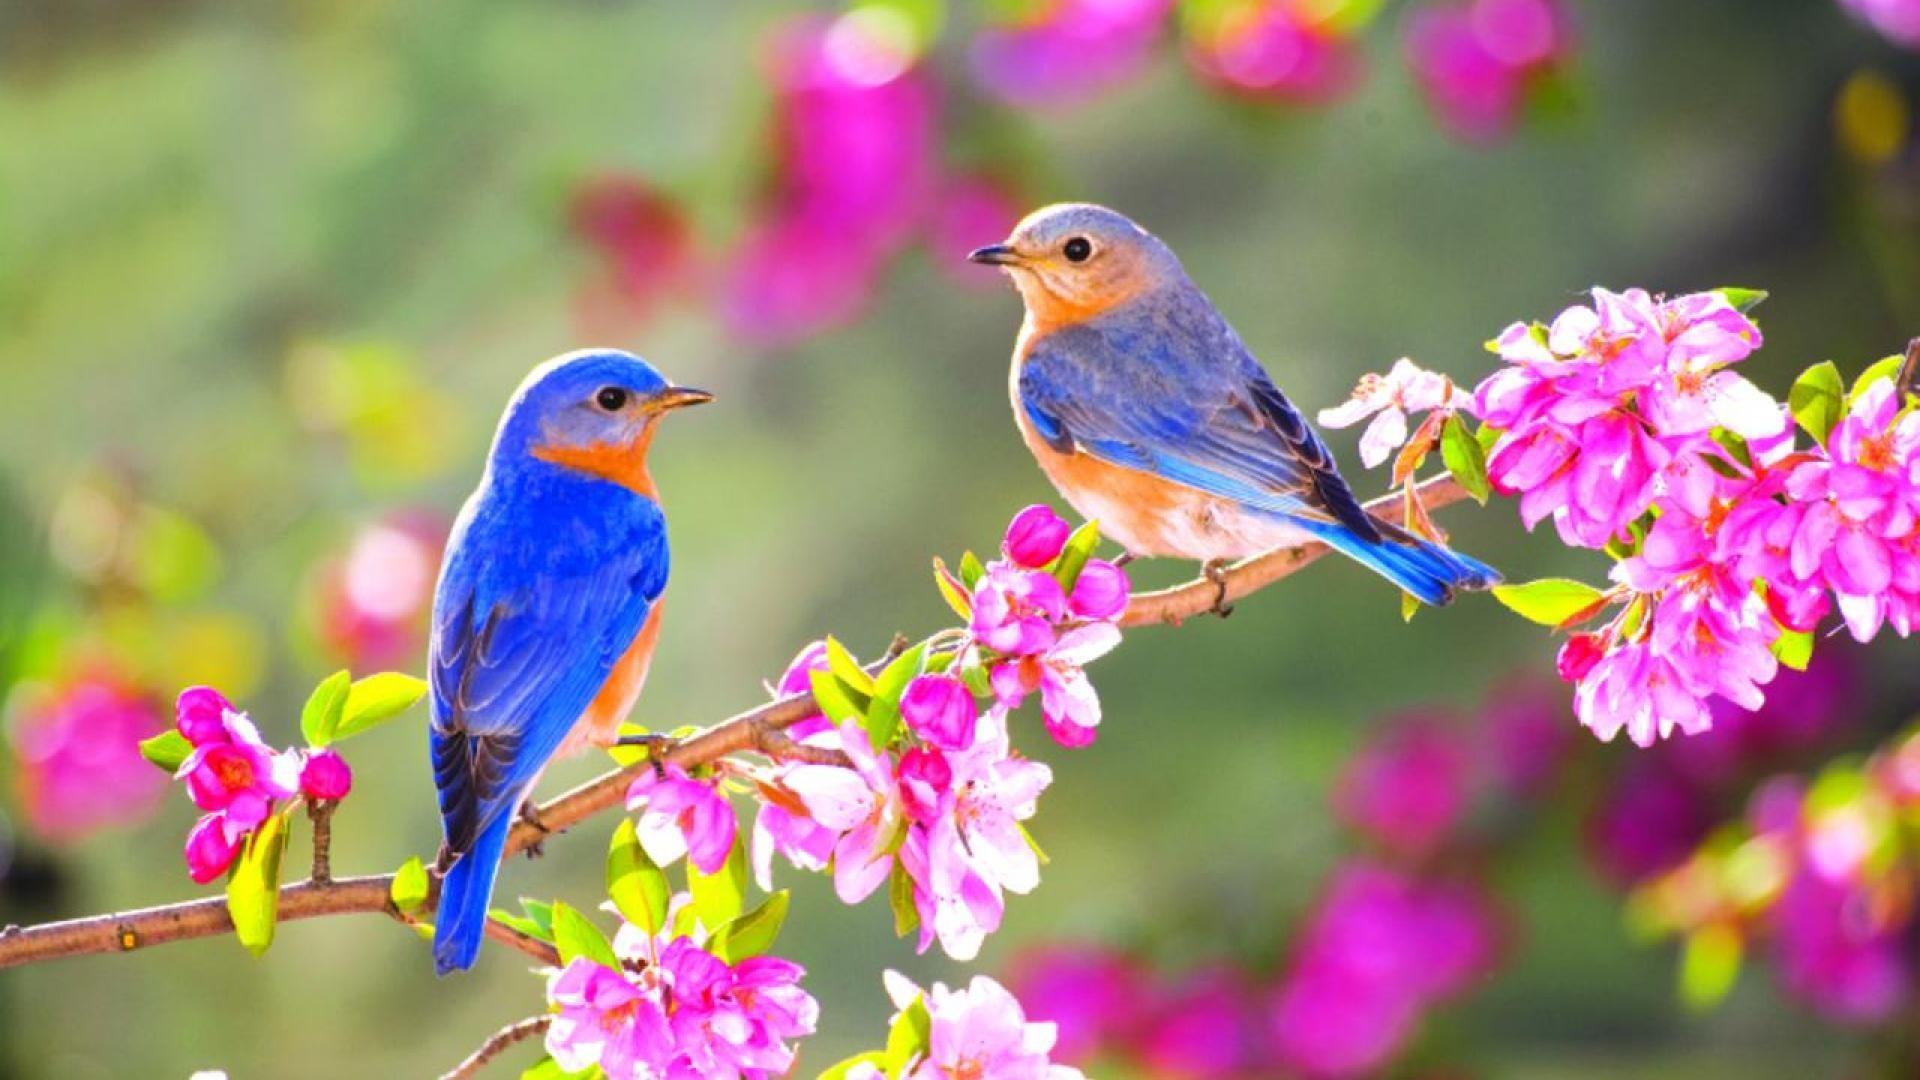 Birds And Flowers Desktop Wallpapers Top Free Birds And Flowers Desktop Backgrounds Wallpaperaccess